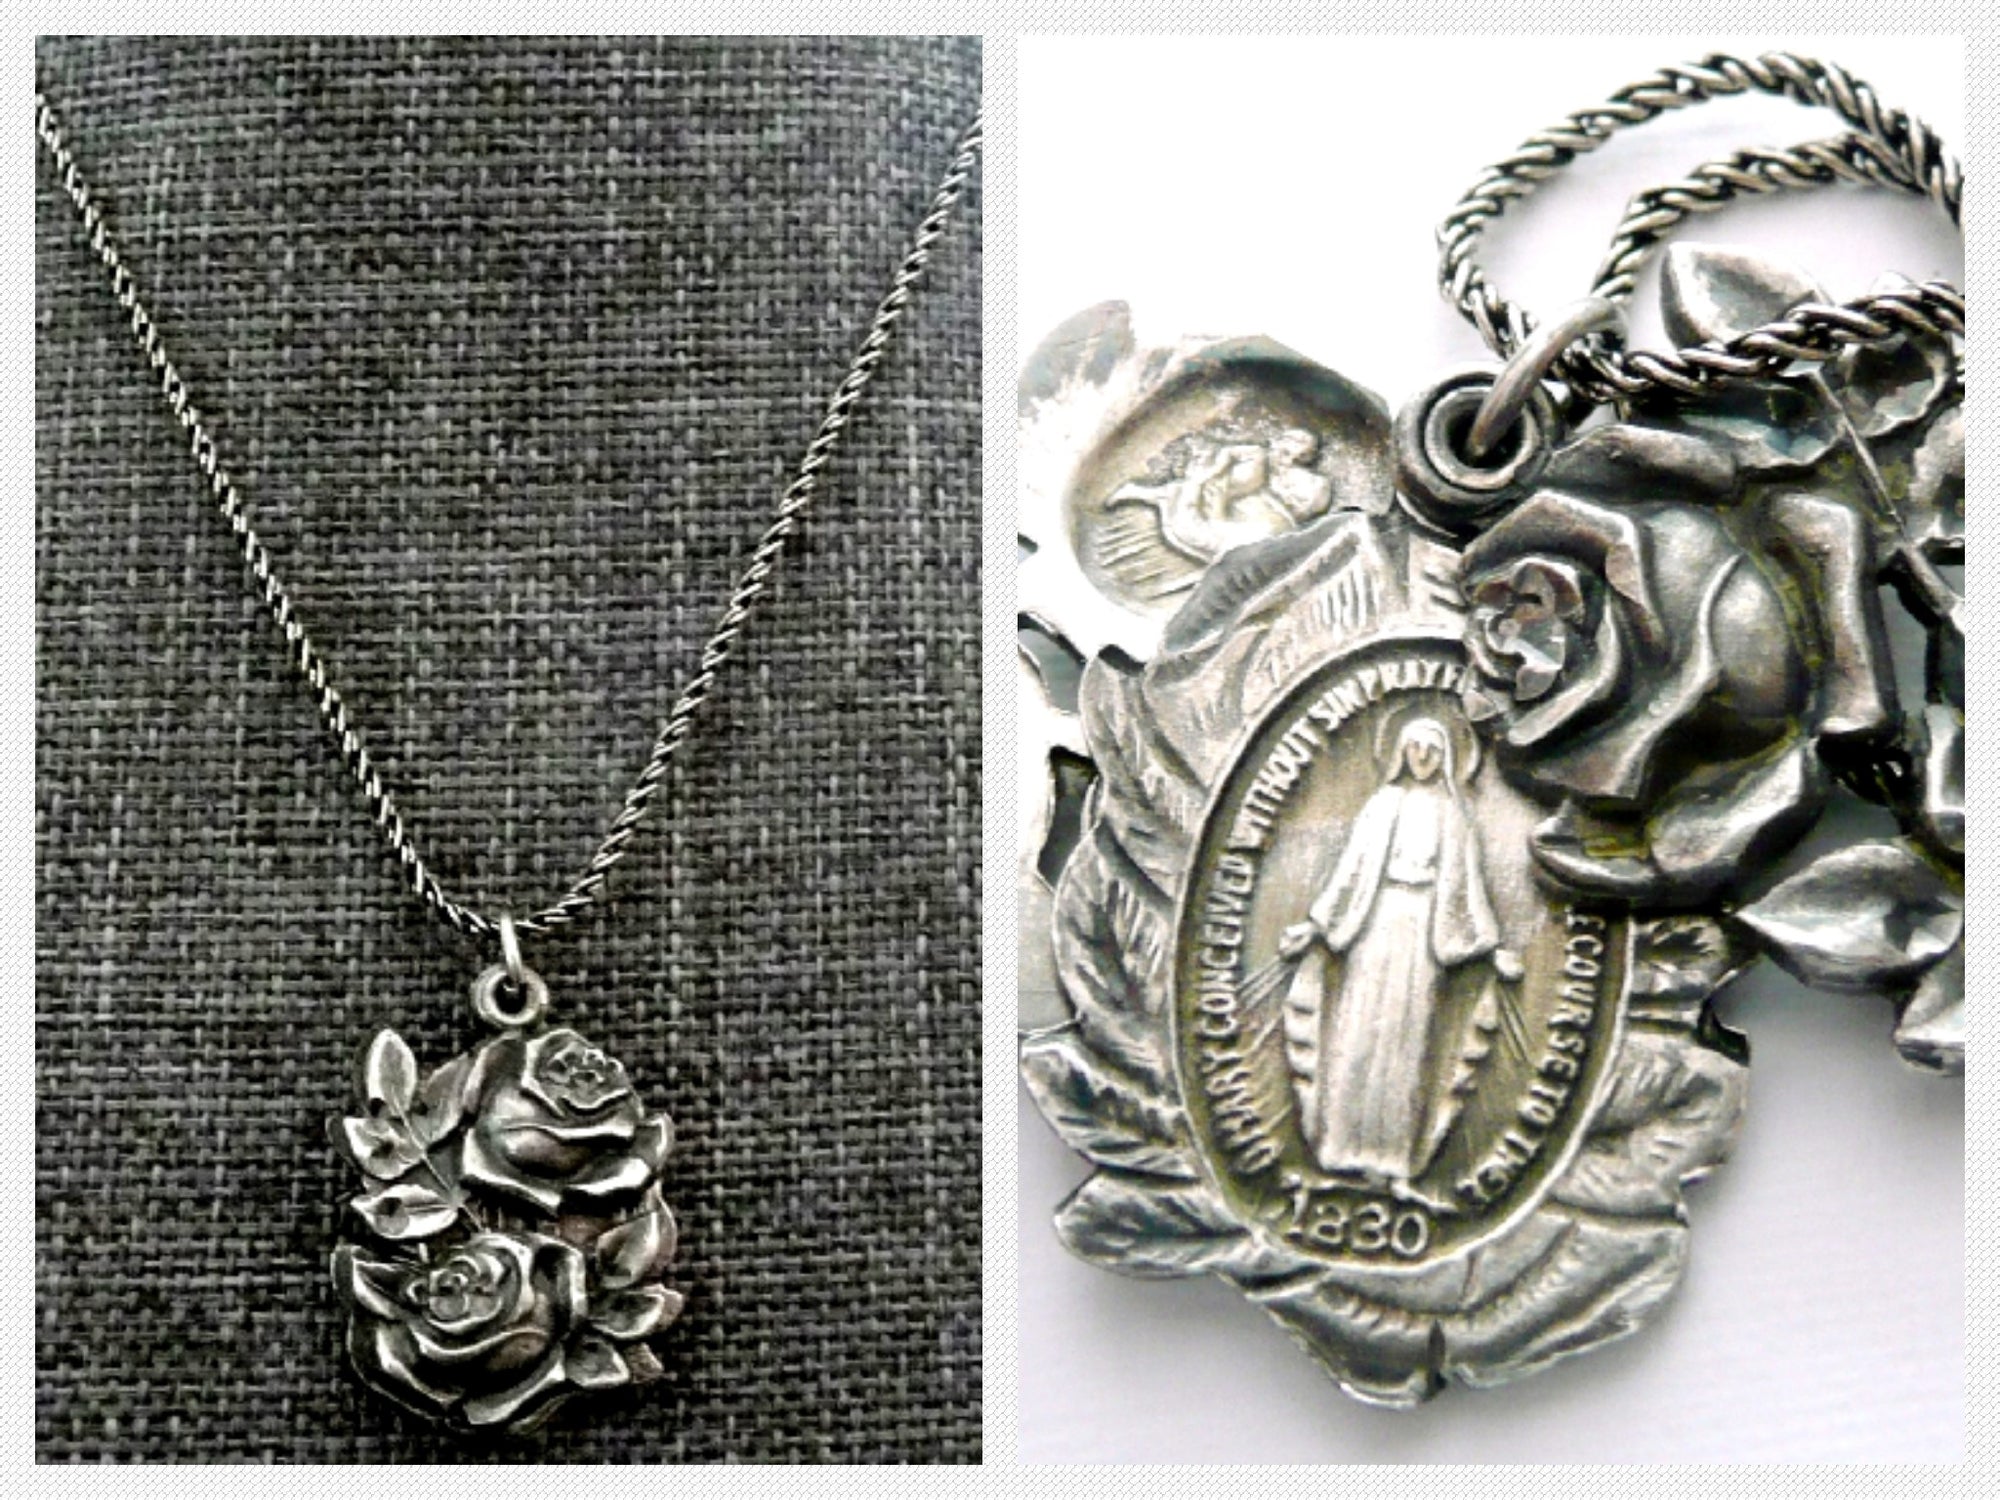 Miraculous Medal Necklace - Vintage Sterling Silver Slide Medal